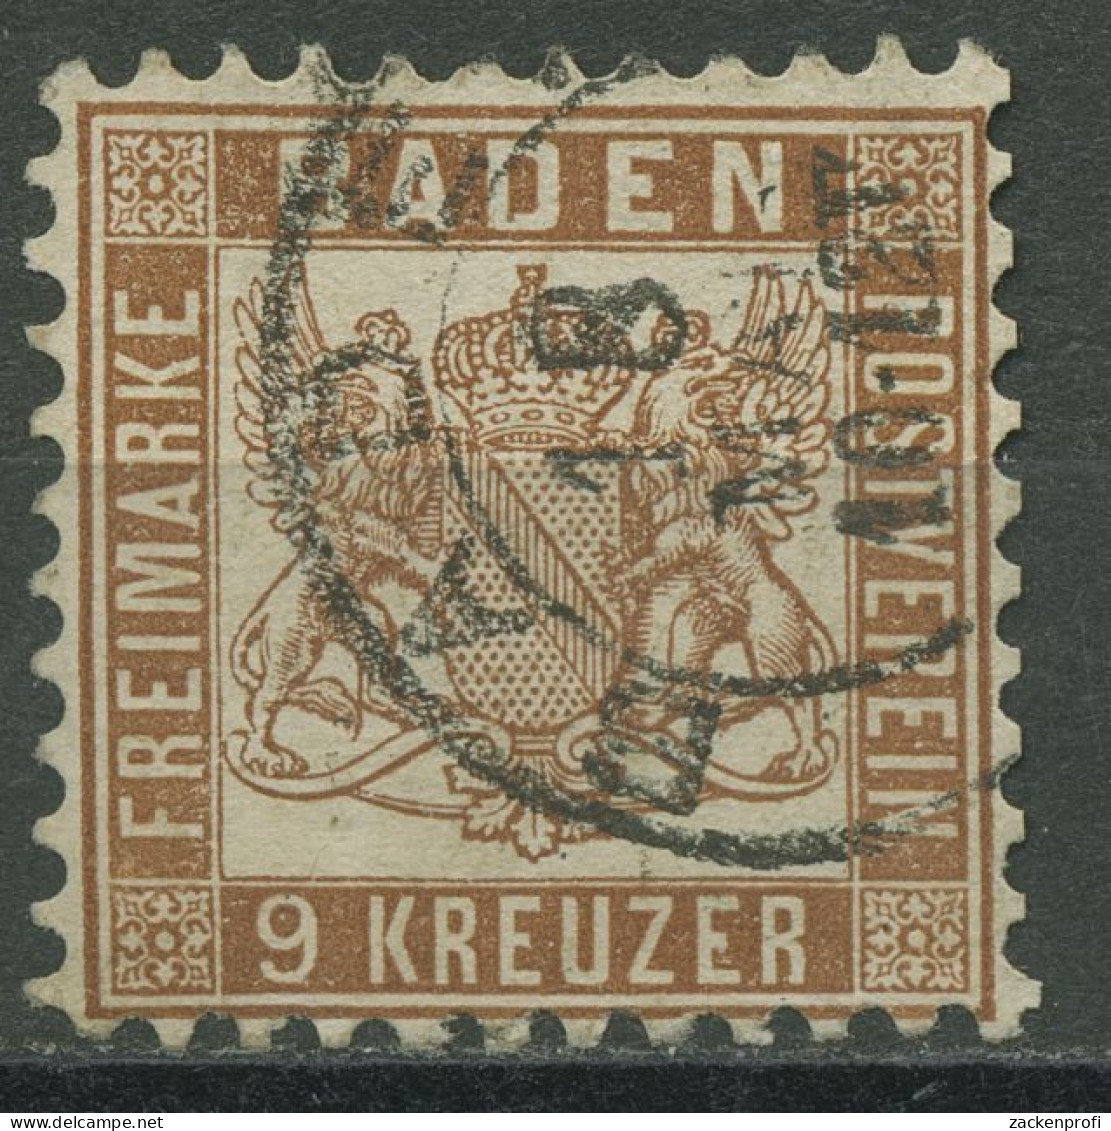 Baden 1862/66 9 Kreuzer Lebhaftrötlichbraun 20 A Gestempelt - Used